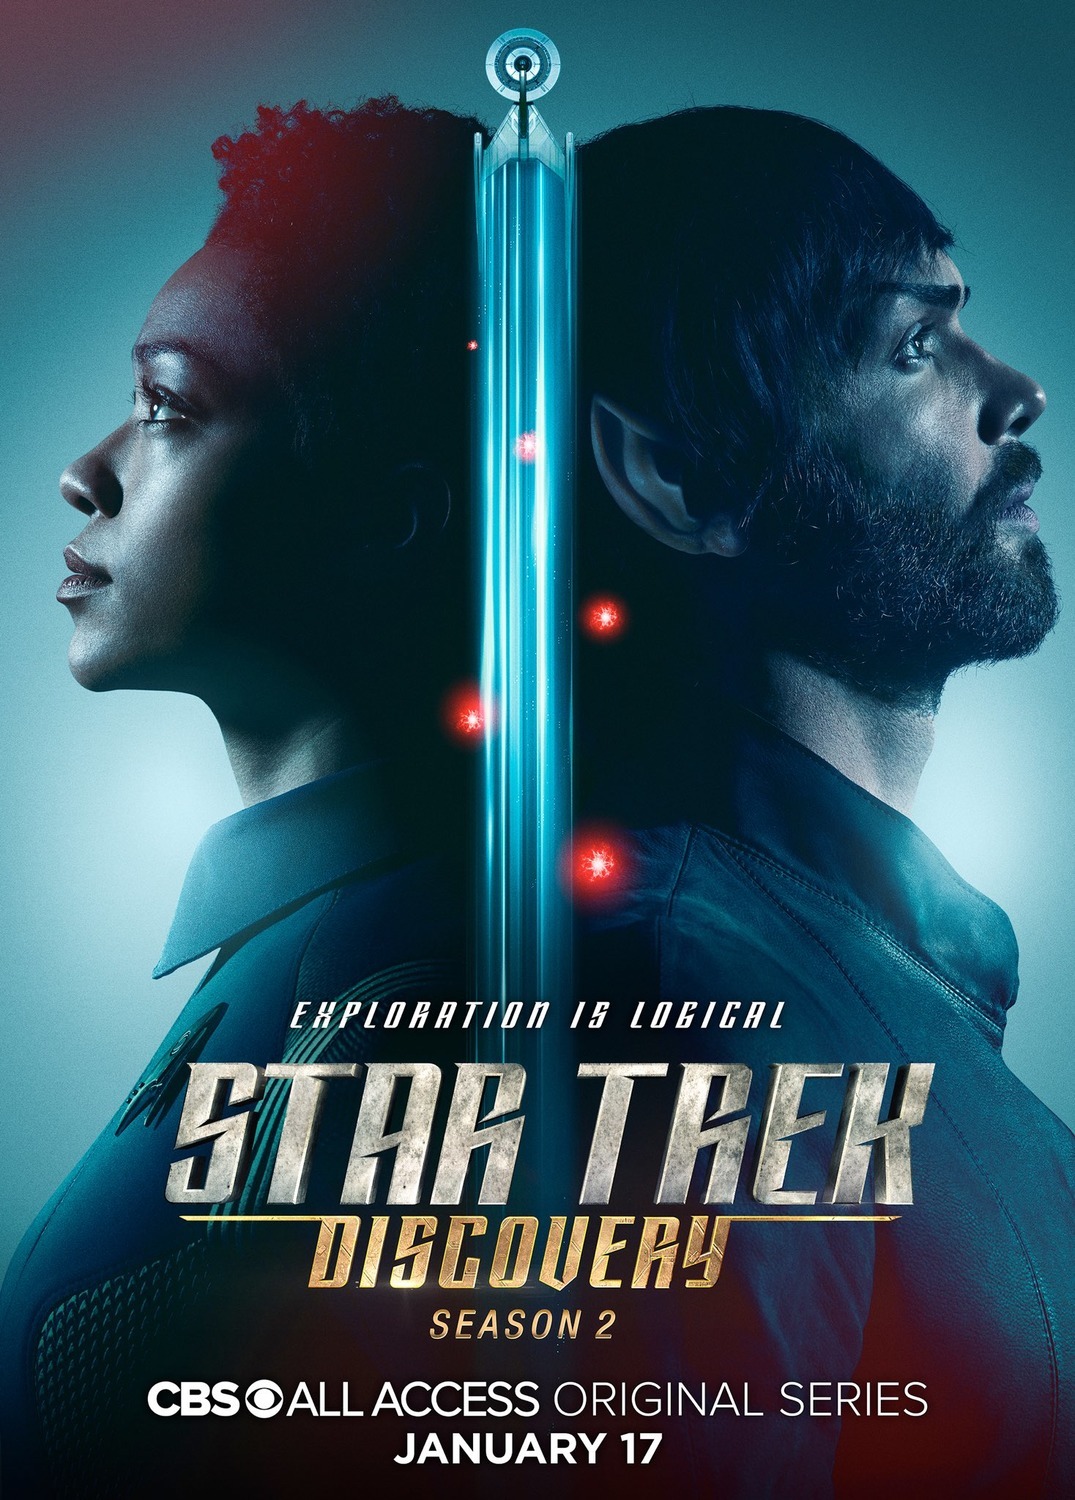 ดูหนังออนไลน์ฟรี Star Trek Discovery Season 2 EP.11 สตาร์ เทรค ดิสคัฟเวอรี่ ซีซั่นที่ 2 ตอนที่ 11